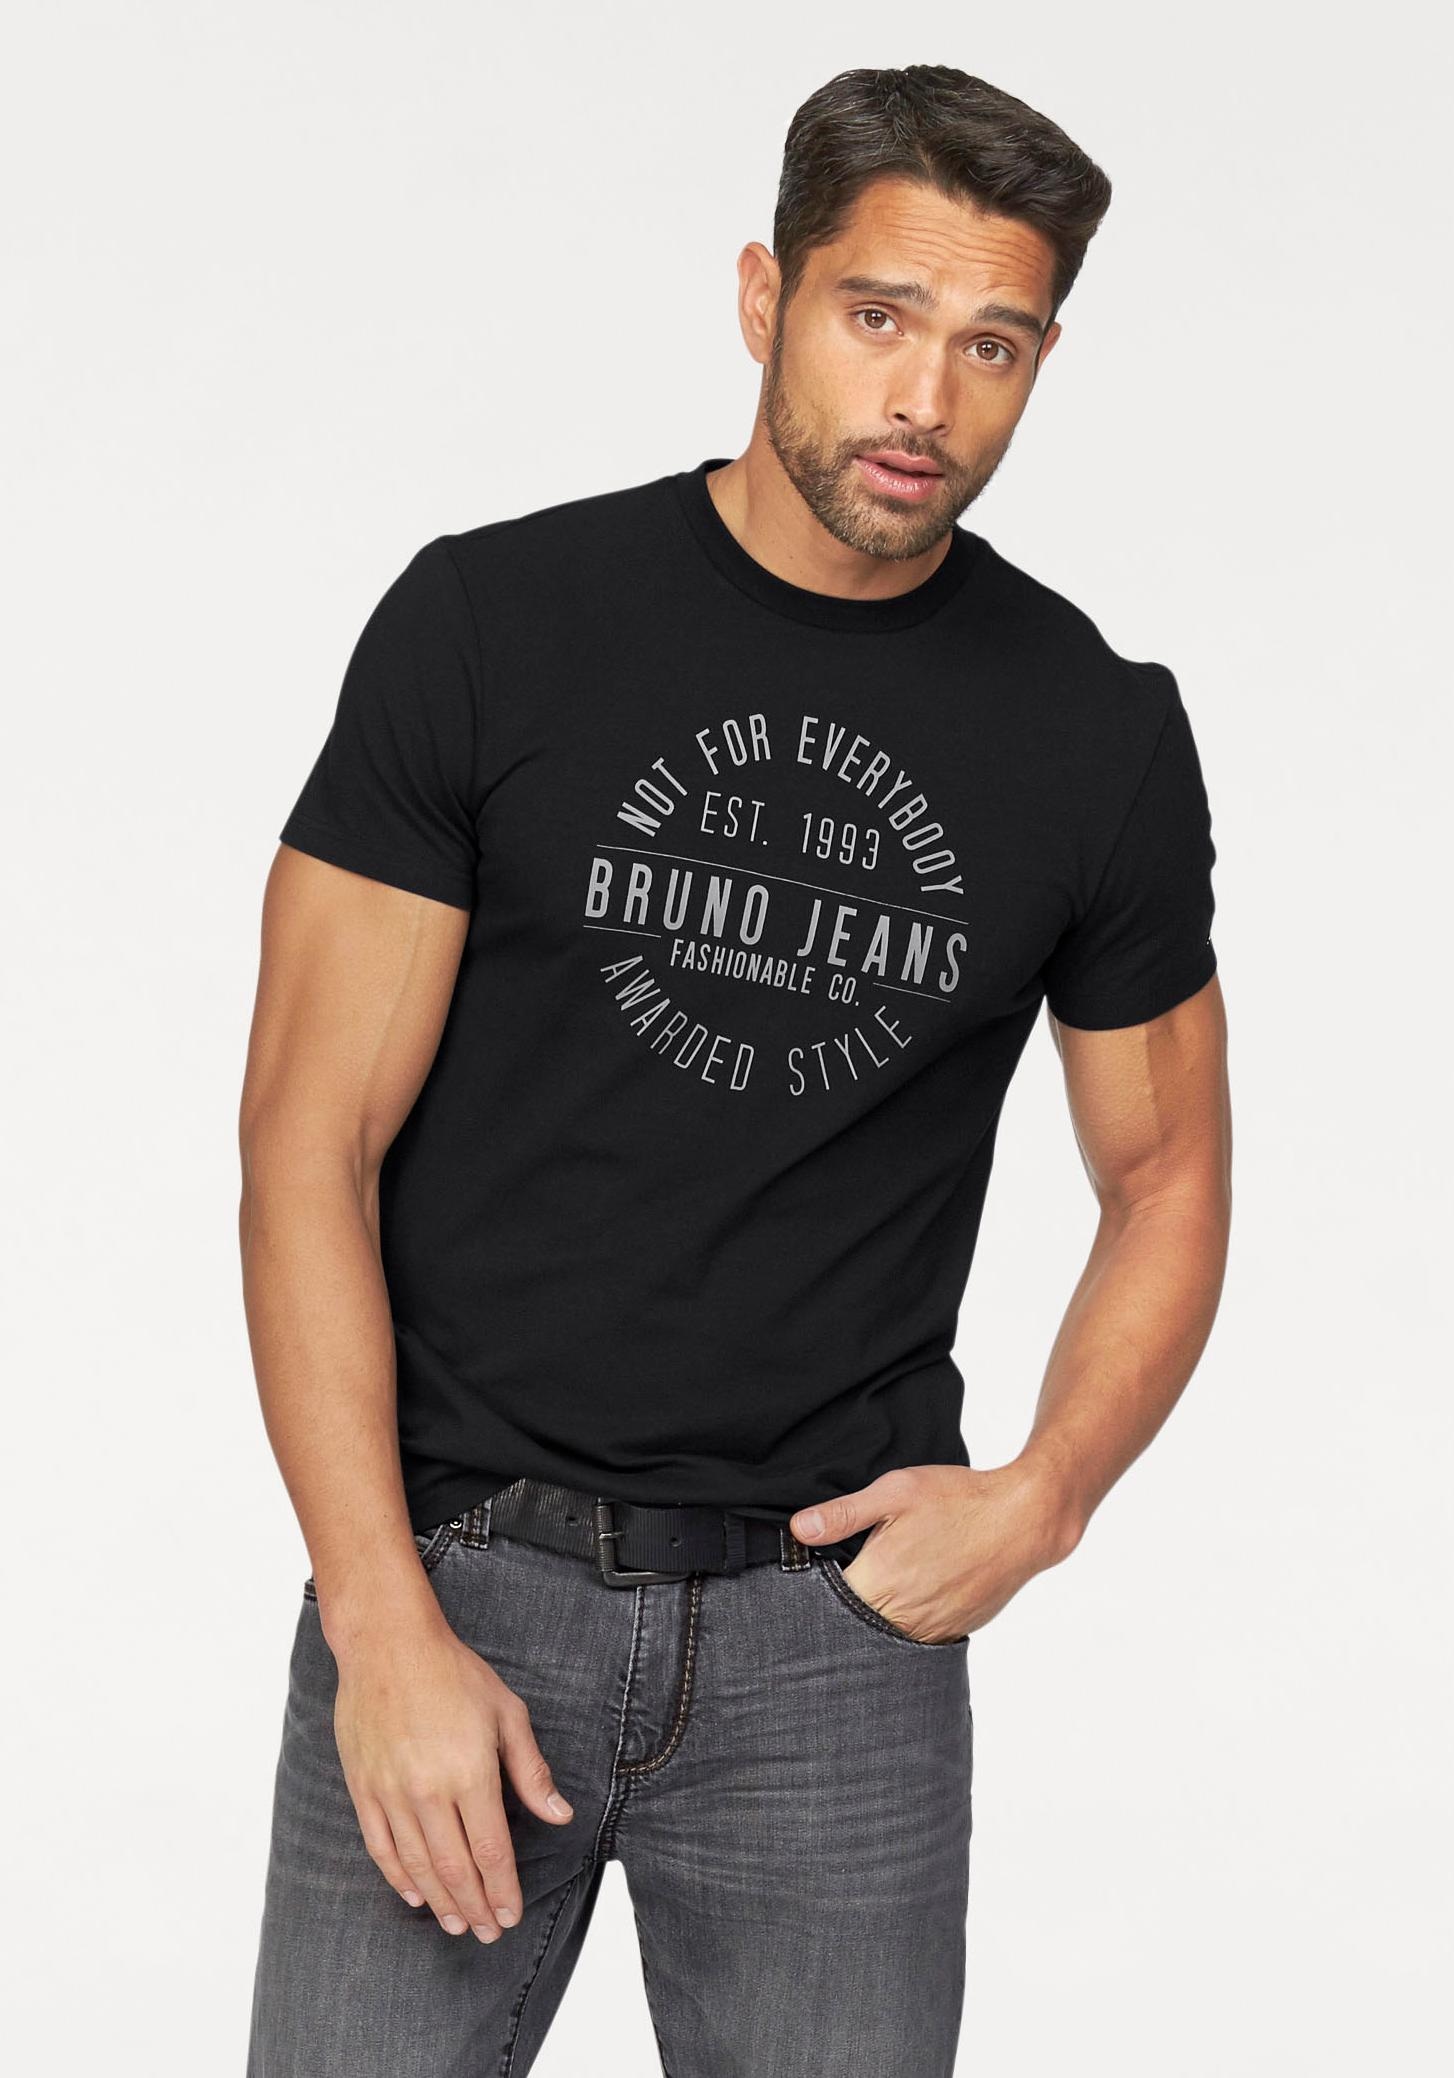 Markenprint kaufen mit Bruno ▷ BAUR T-Shirt, Banani |